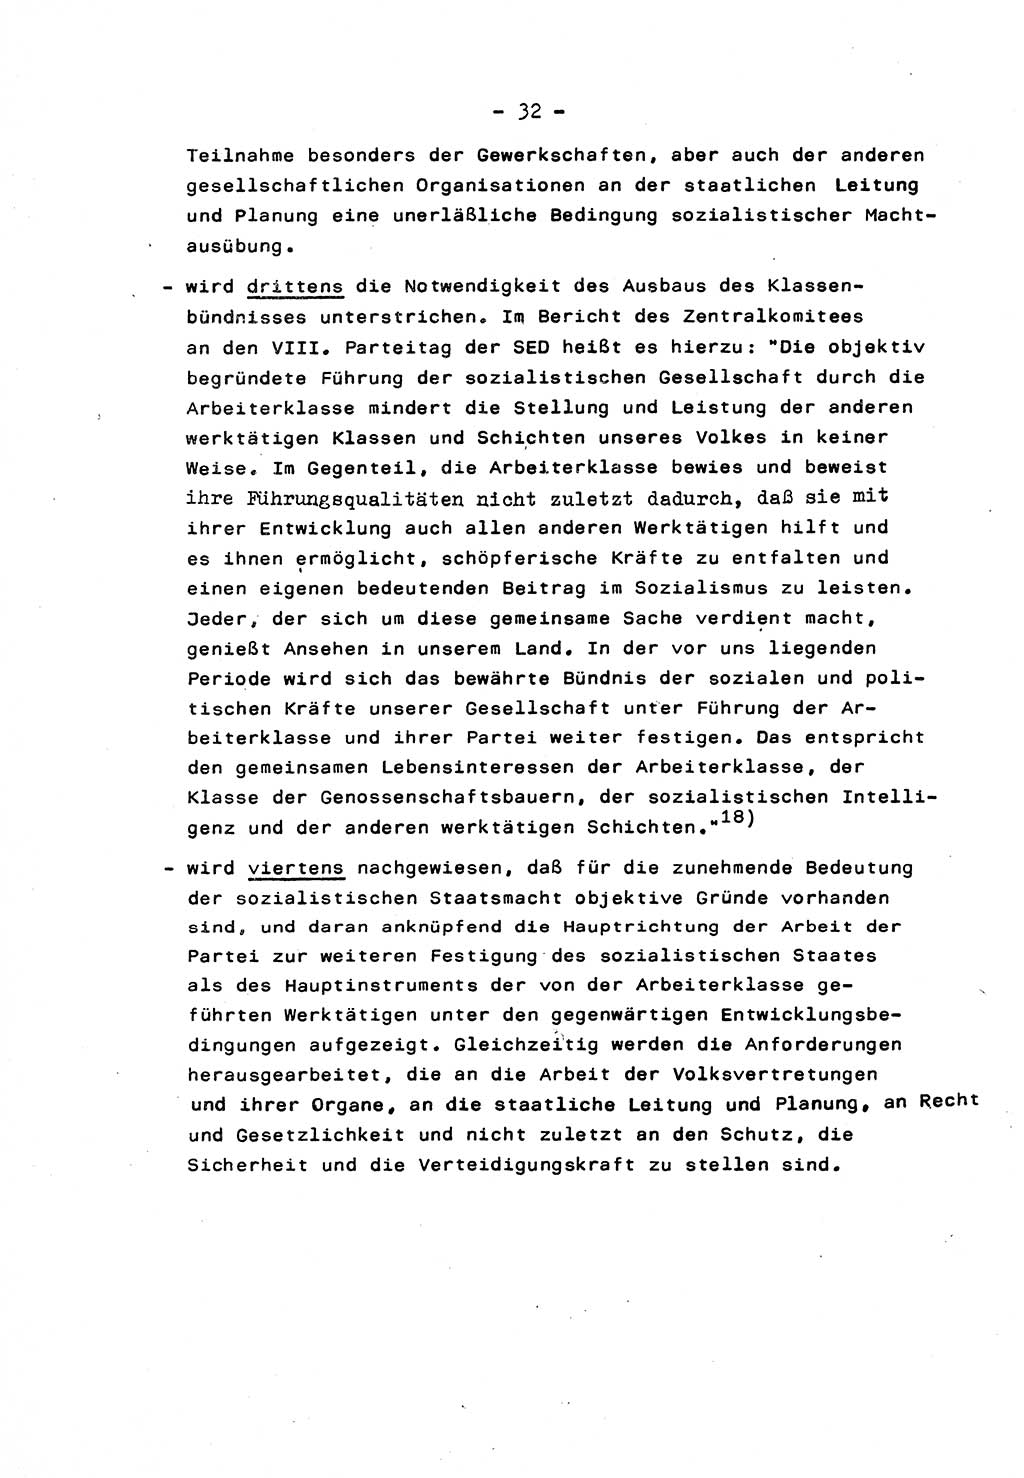 Marxistisch-leninistische Staats- und Rechtstheorie [Deutsche Demokratische Republik (DDR)] 1975, Seite 32 (ML St.-R.-Th. DDR 1975, S. 32)